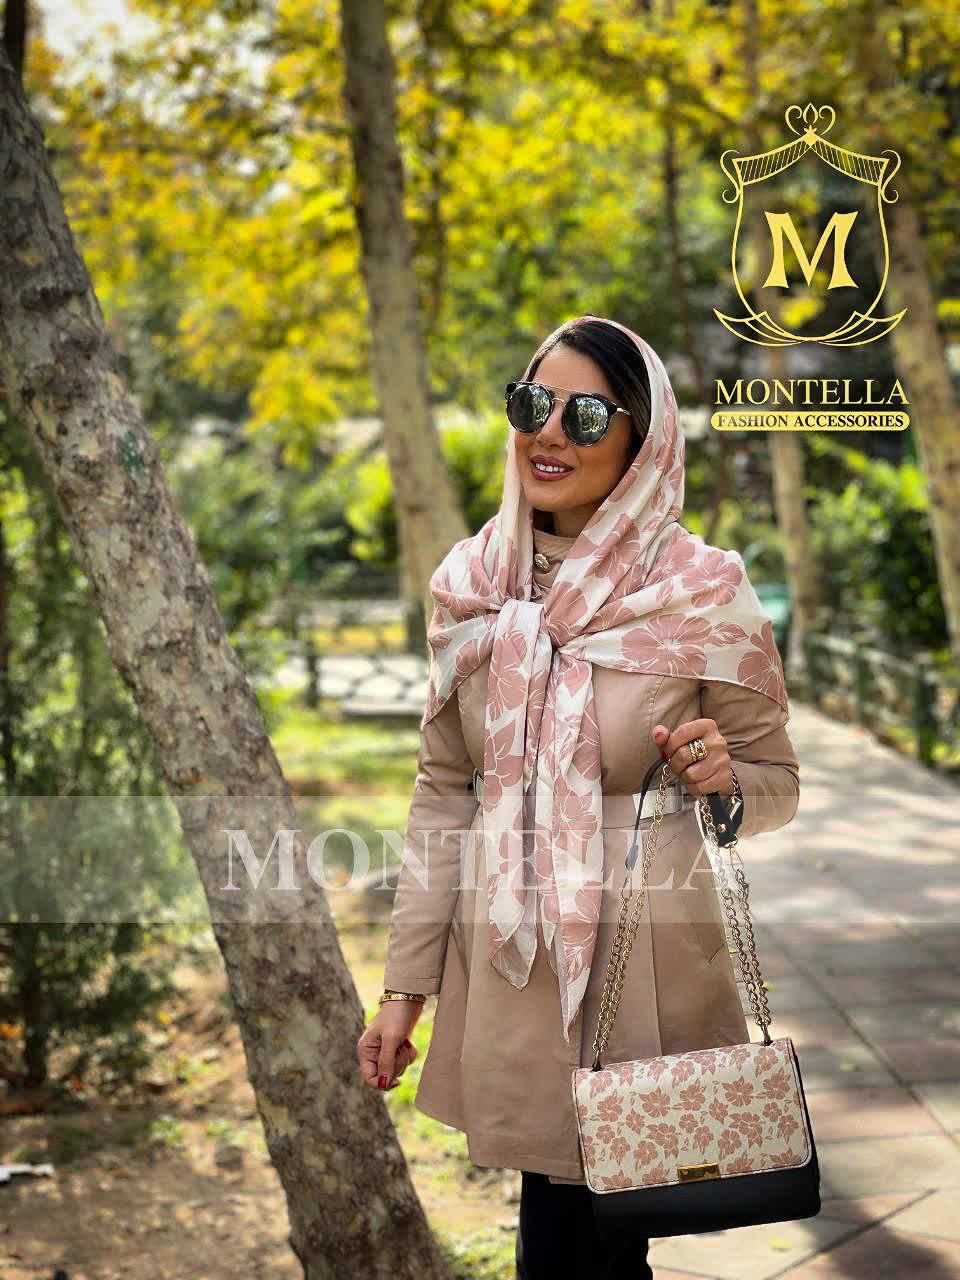 ست کیف و روسری و شال زنانه باکیفیت رنگ کرمی طرح گلدار با کیف پاسپورتی دسته زنجیری با ارسال رایگان کد mo298